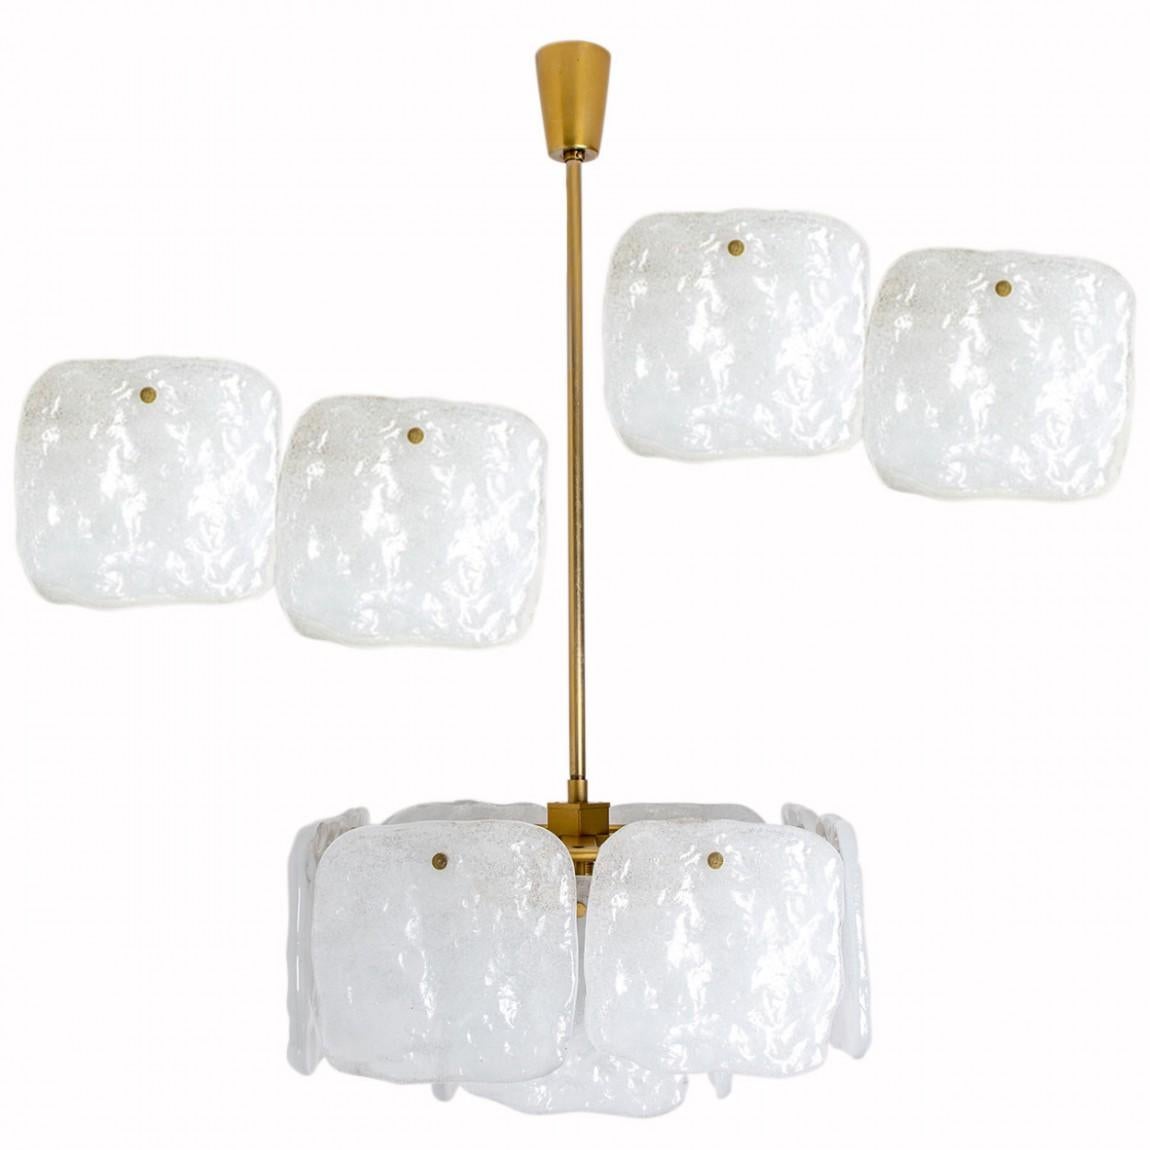 Eine beeindruckende Reihe von Leuchten, entworfen von J.T. Kalmar, hergestellt von Kalmar Franken, Österreich in den 1960er Jahren.
Hochwertiges und handgefertigtes Design aus dem 20. Jahrhundert. Die großen Quadrate der weißen, undurchsichtigen,